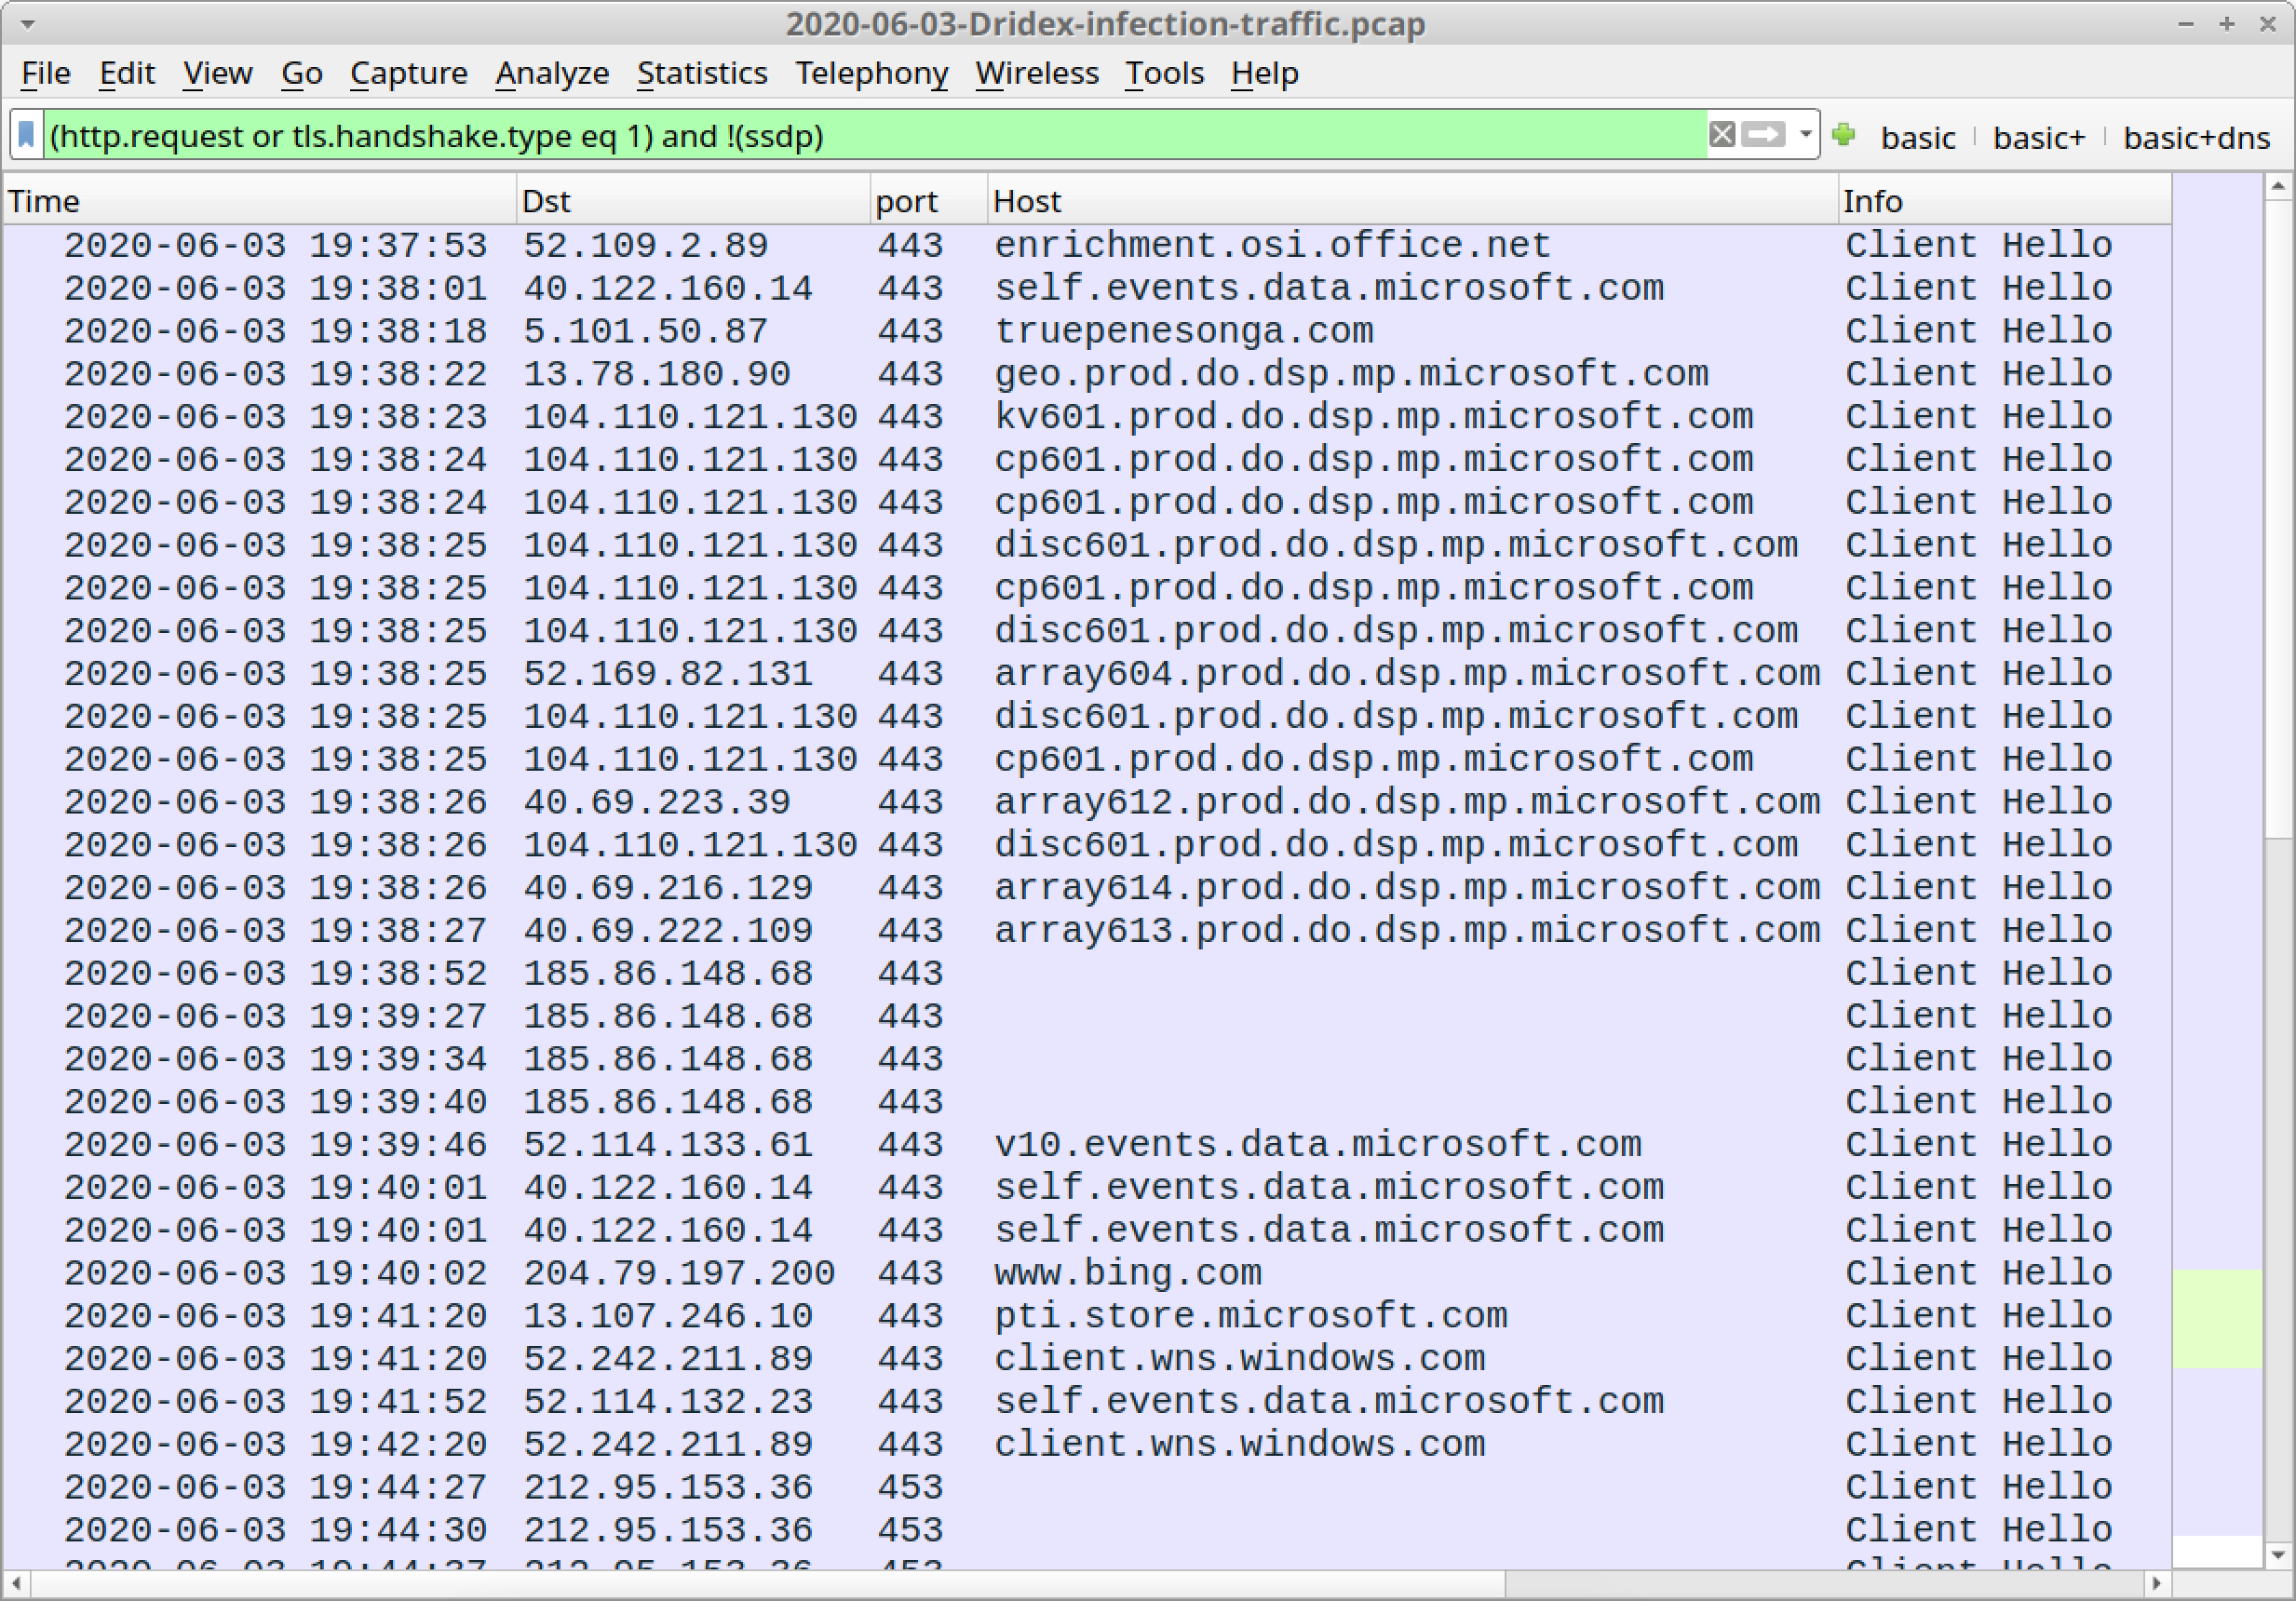 このスクリーンショットは、WiresharkでフィルタリングされたDridex感染トラフィックを示しています。The screen is labeled 2020-06-03-Dridex-infection-traffic.pcap